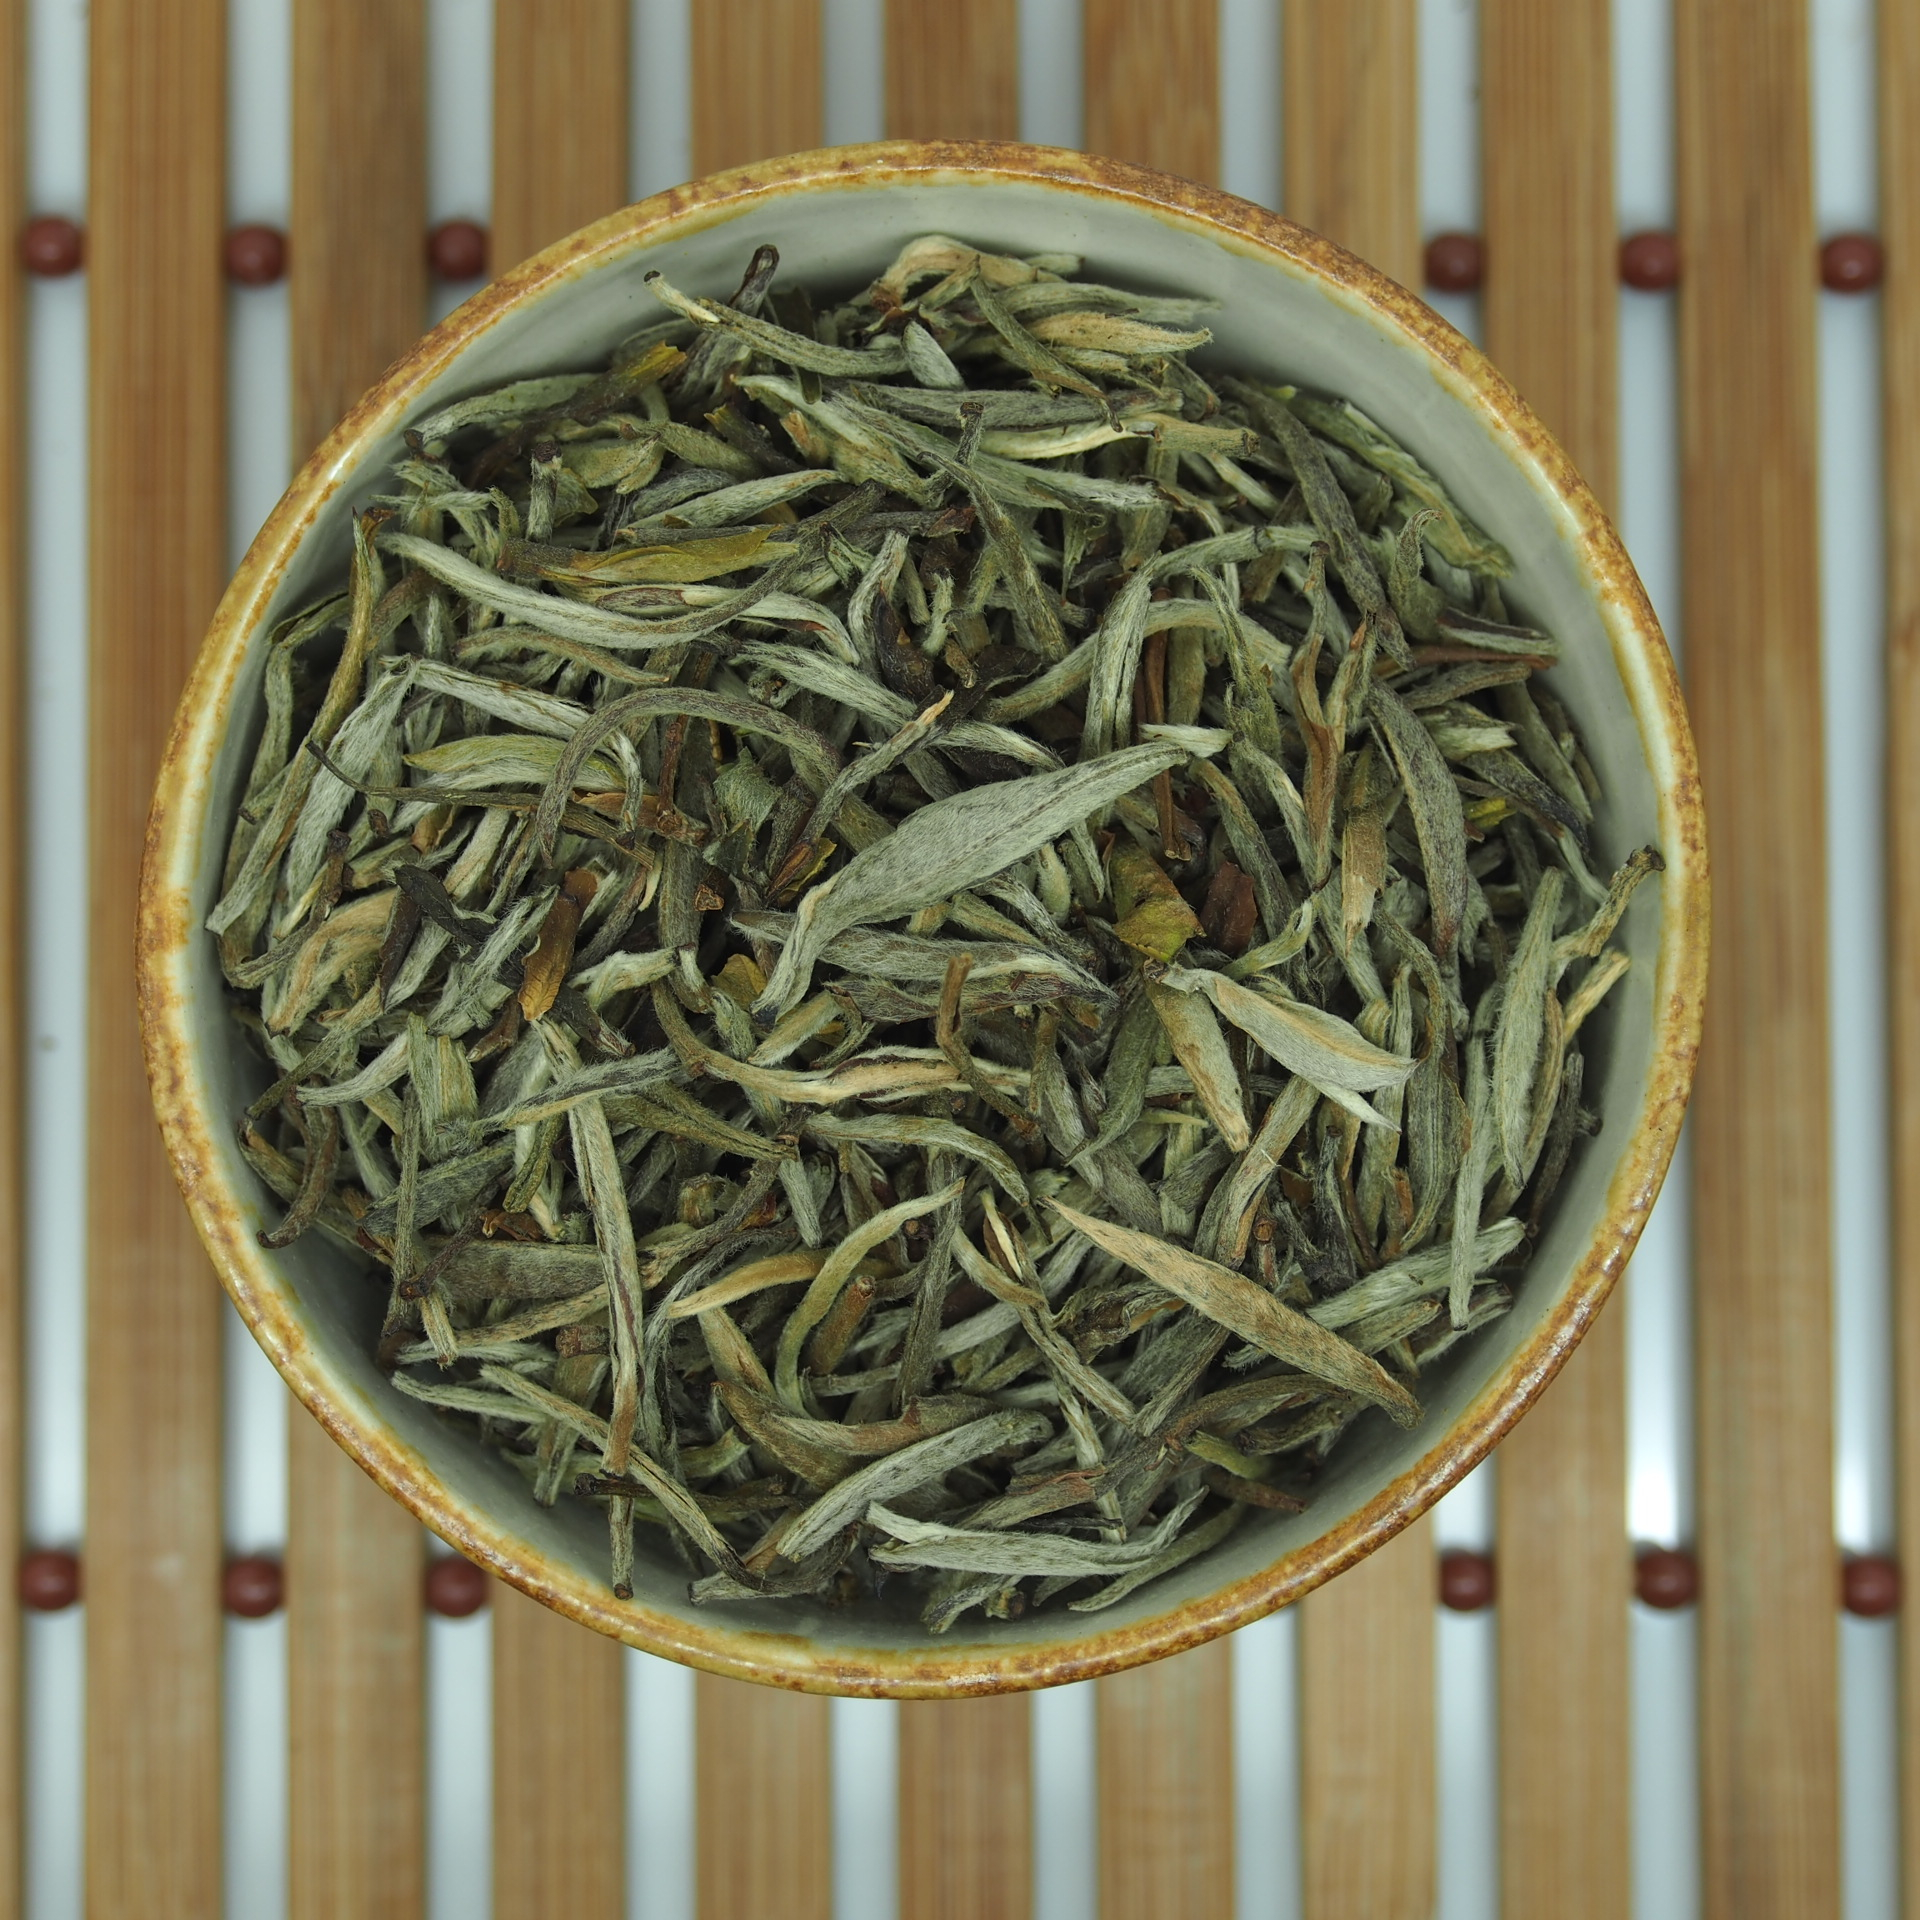 Baihao Yinzhen (Silver Needle) - Valkoinen tee alk. 25 g